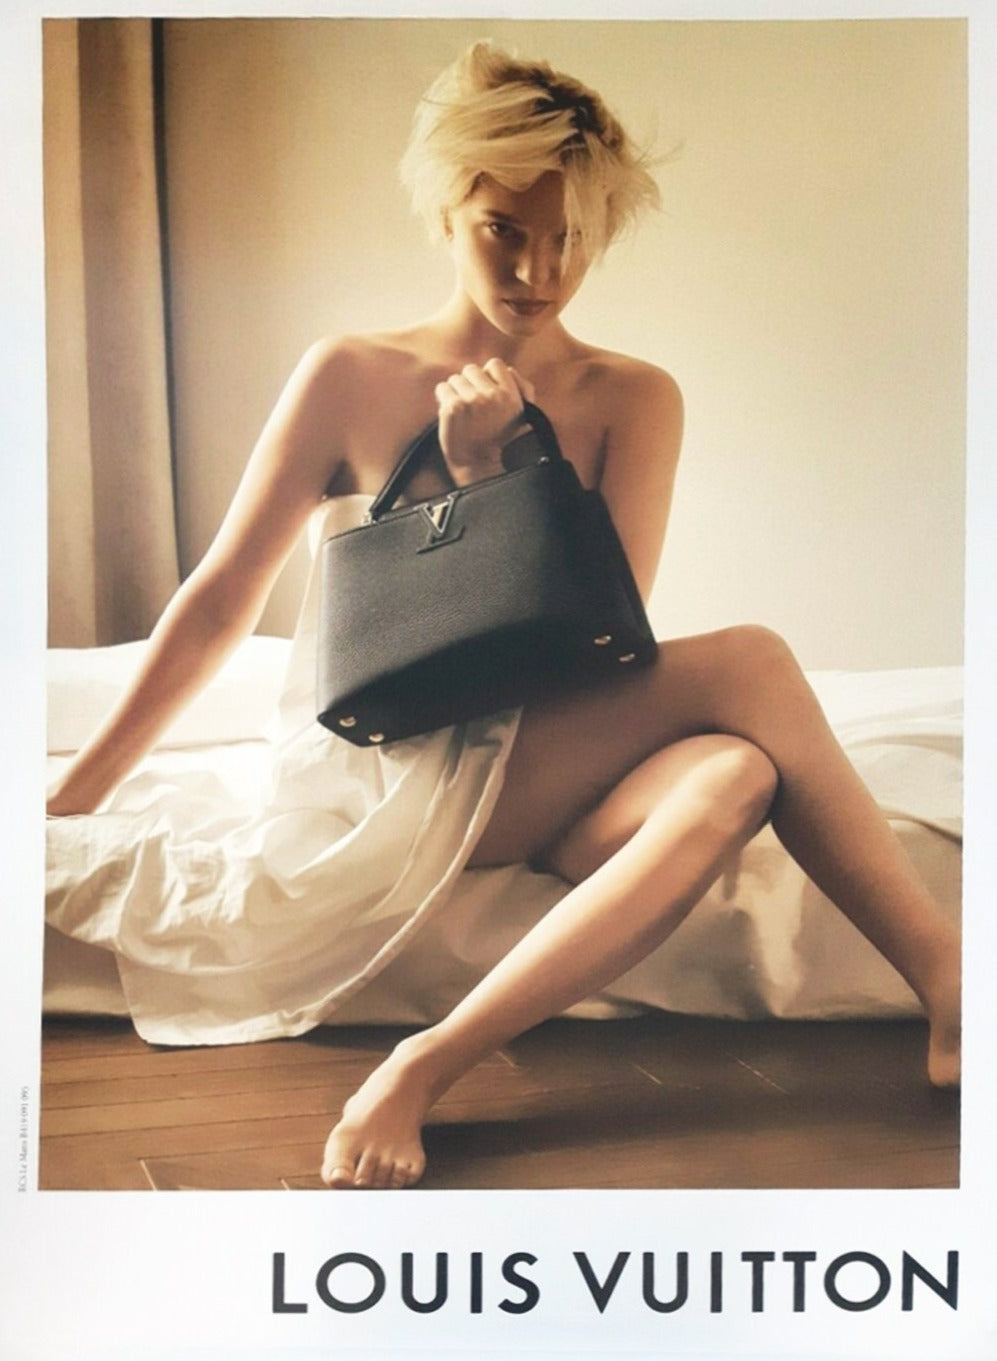 Louis Vuitton - Lea Seydoux